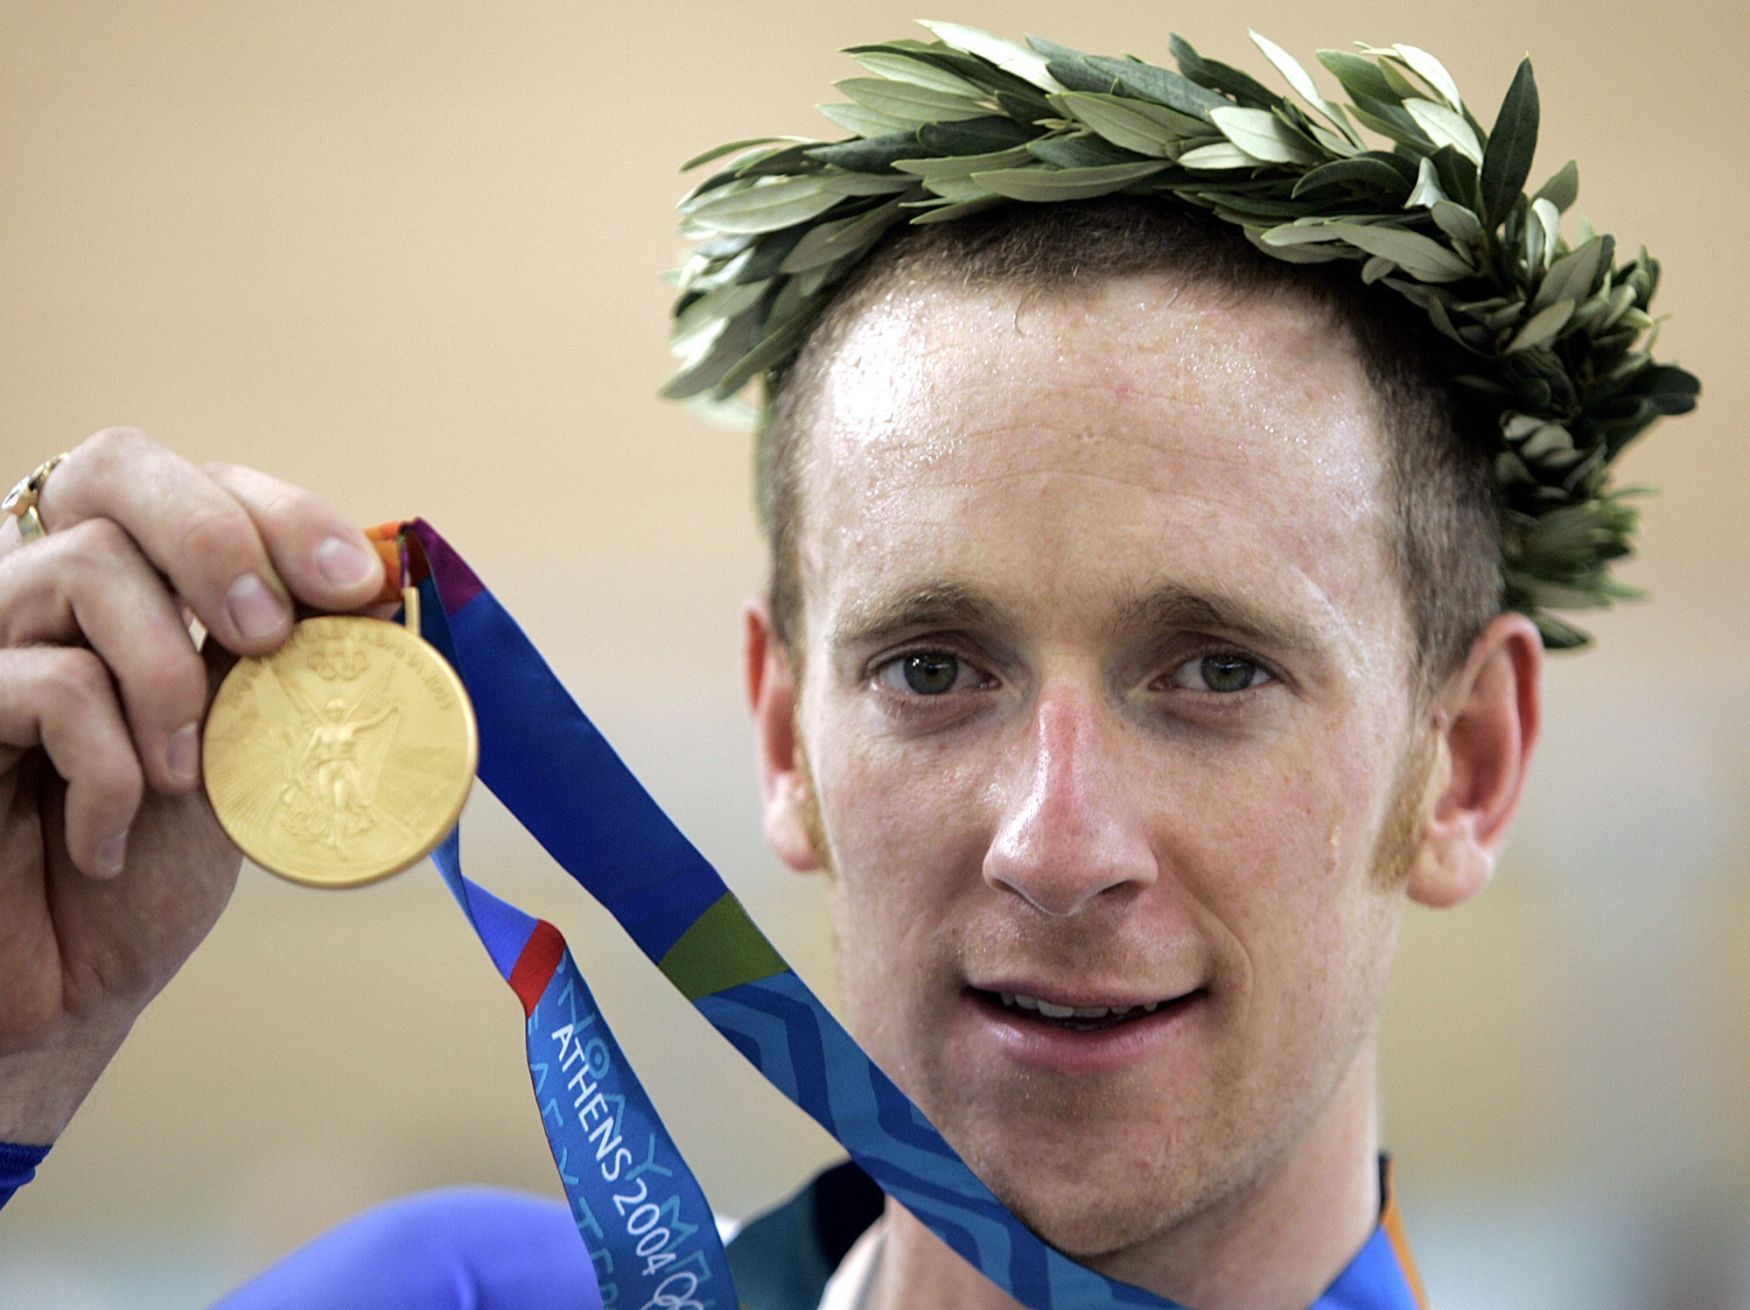 Bradley Wiggins se zlatou olympijskou medailí z Atén 2004 v dráhové cyklistice